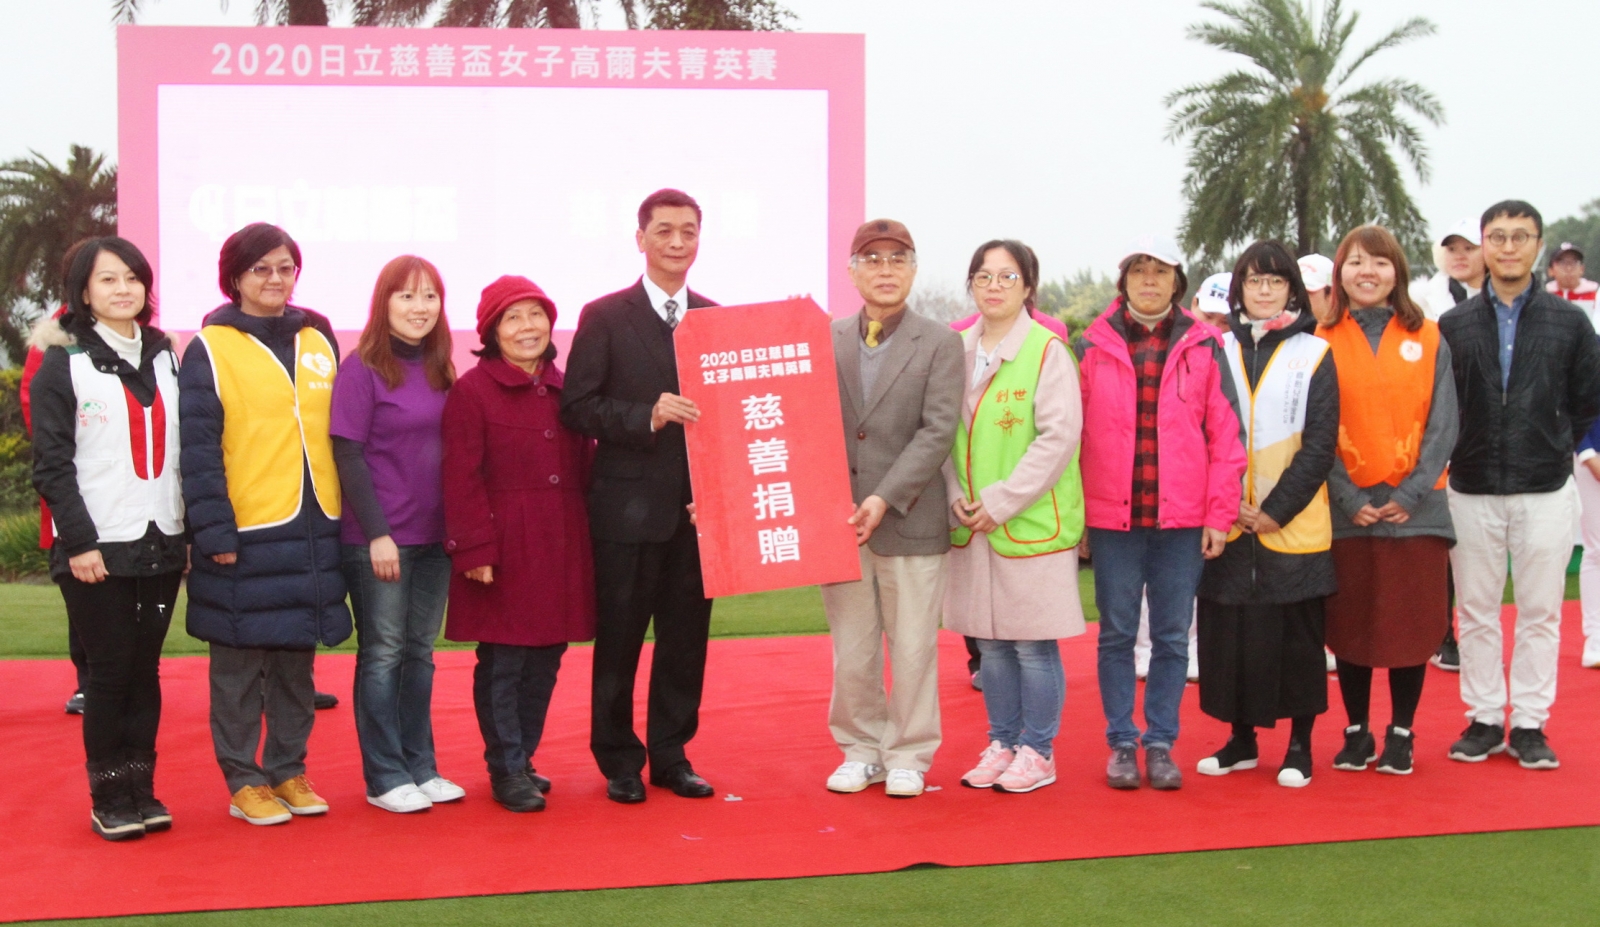 台灣日立江森自控空調設備總經理羅淮正代表將善款捐給10個慈善團體。